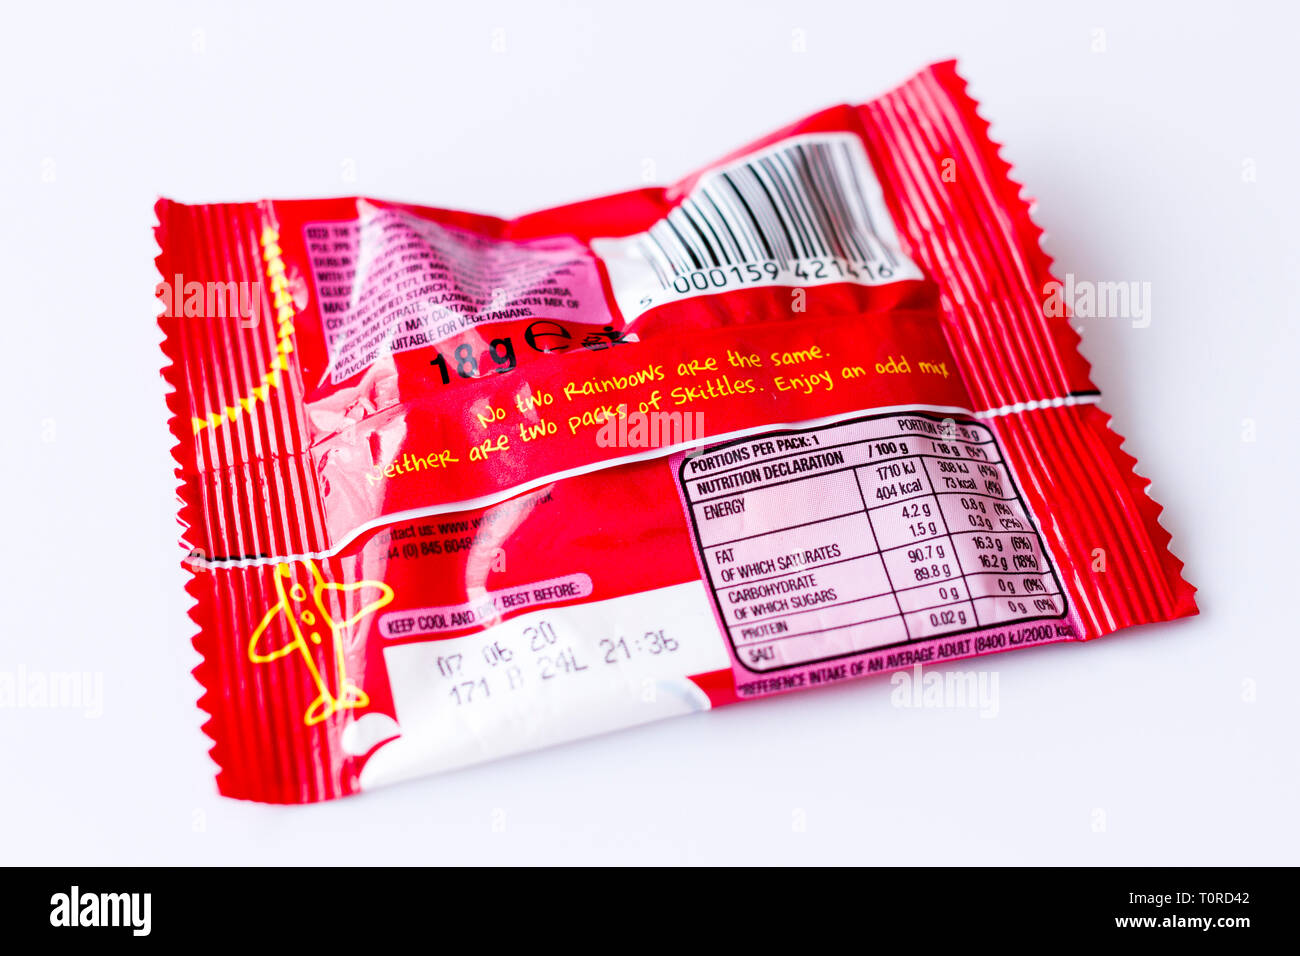 Ernährung Erklärung Informationen auf der Rückseite der Packung Kegeln Süßigkeiten, Süßigkeiten. Vereinigtes Königreich Stockfoto